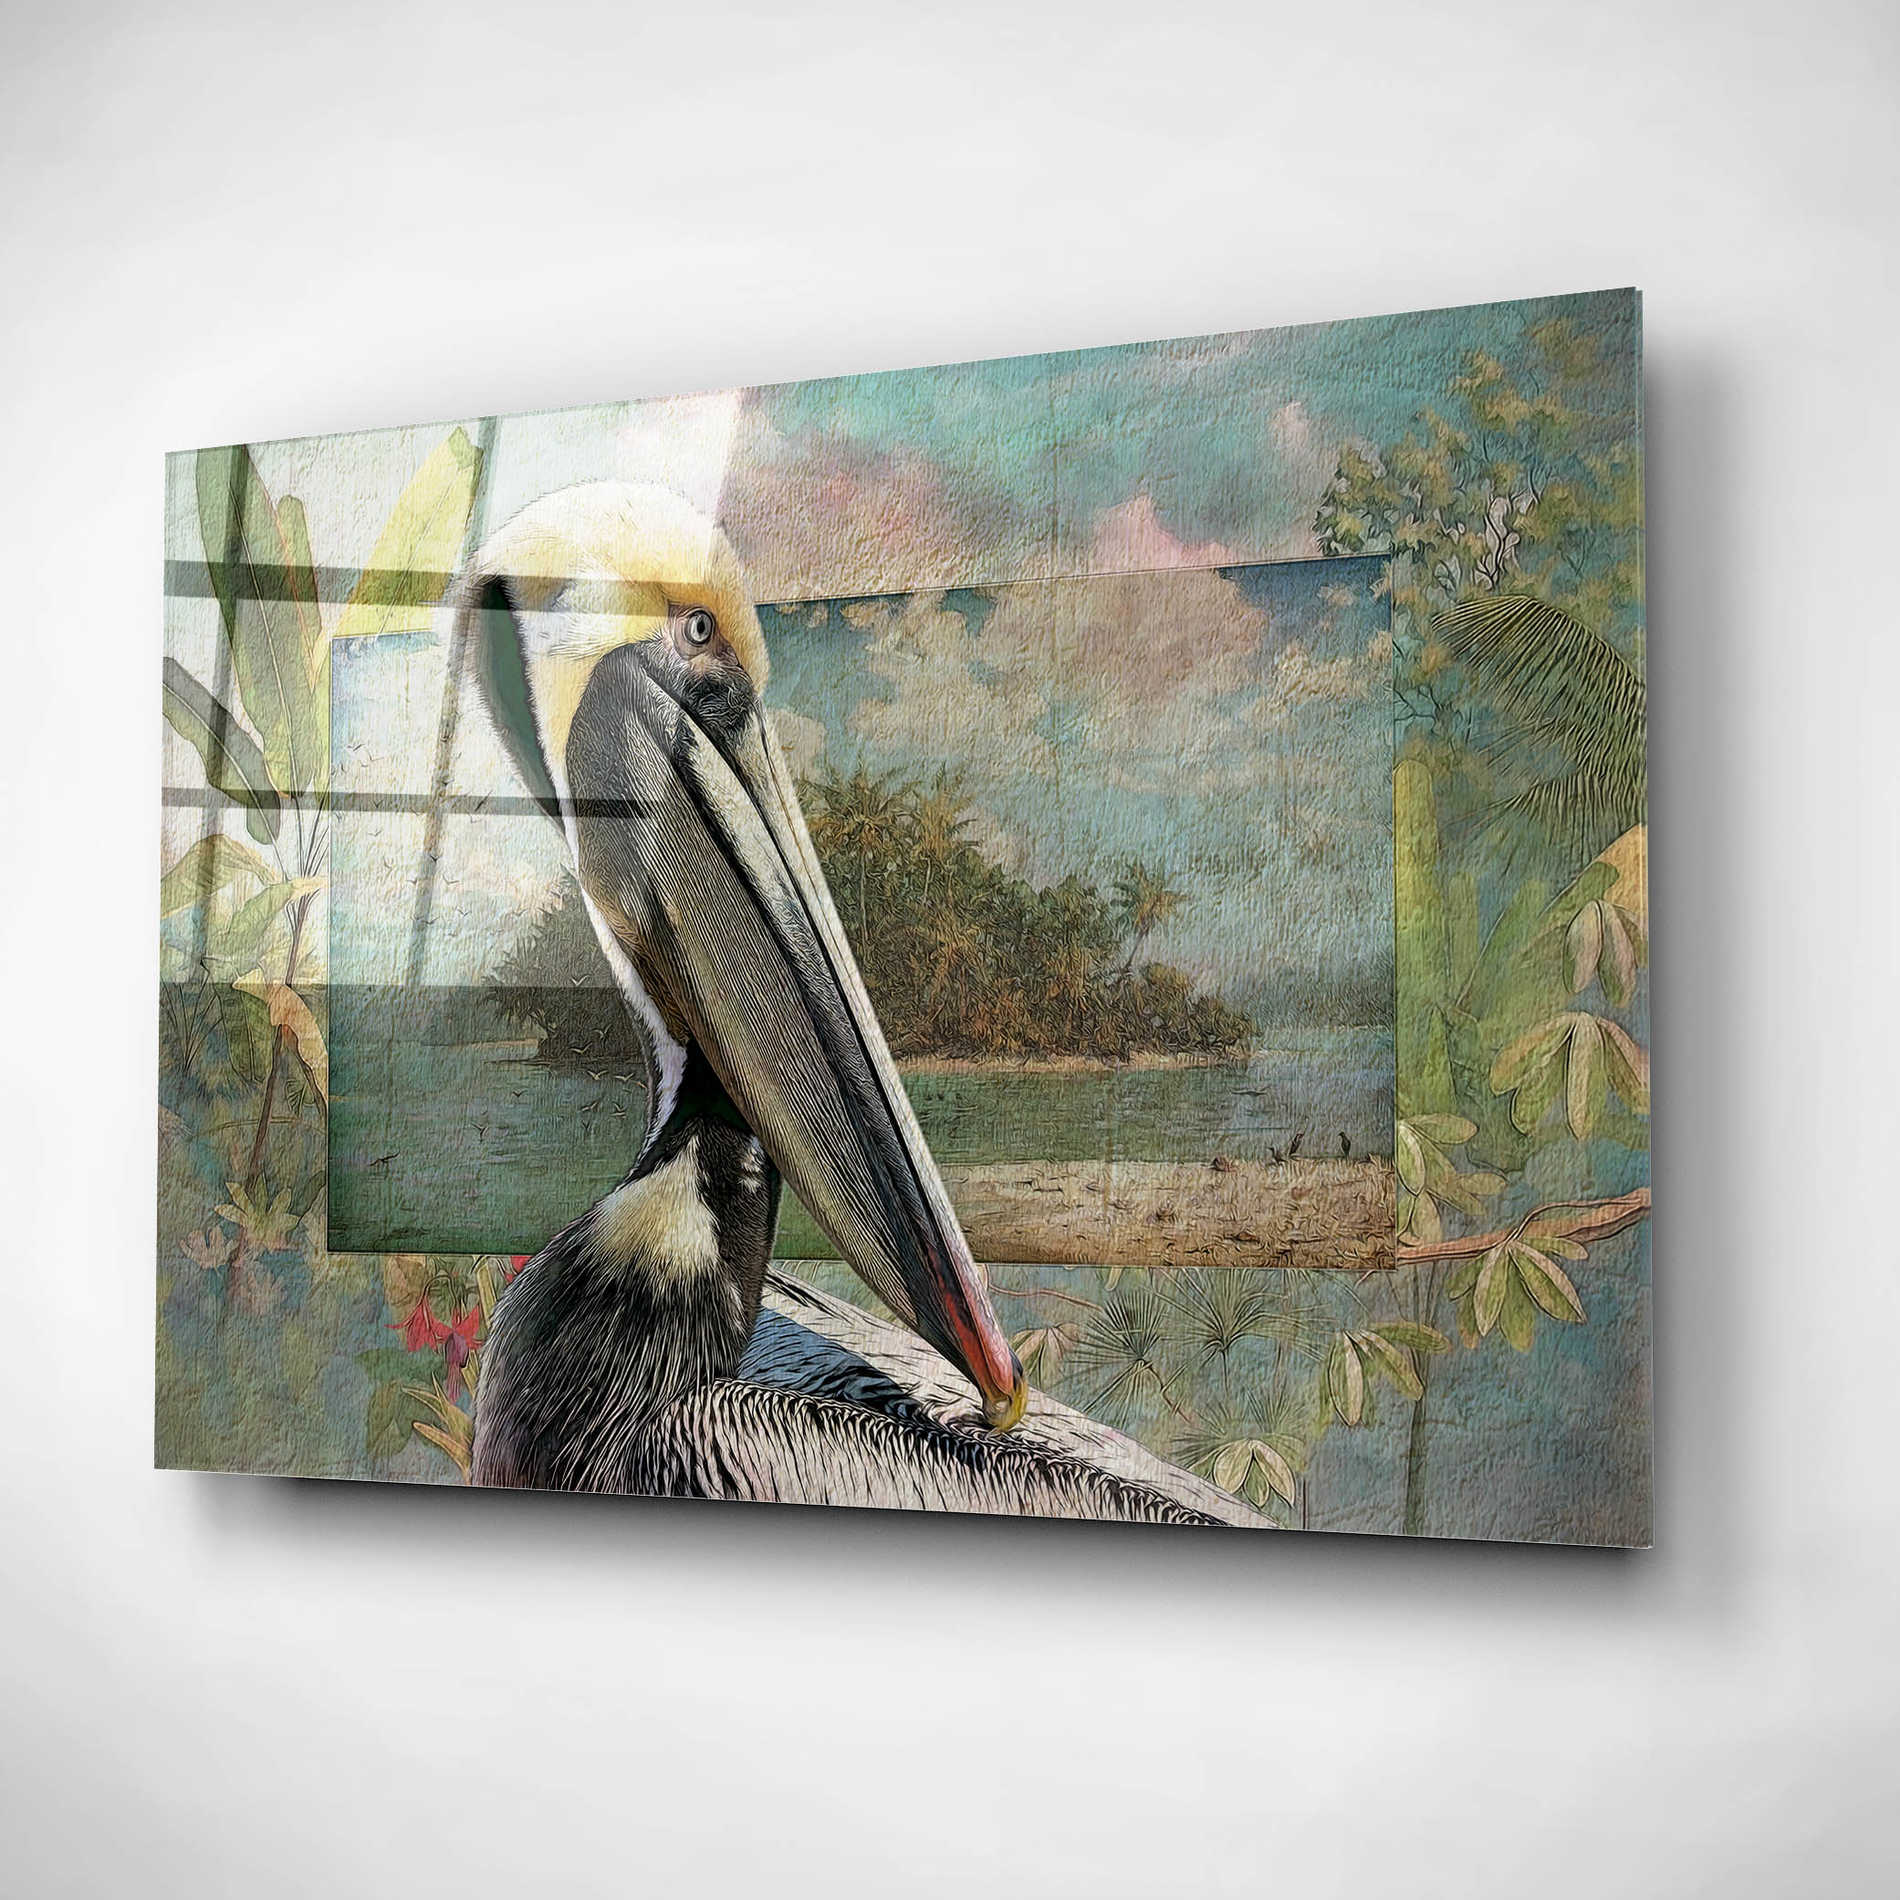 Epic Art 'Pelican Paradise II' by Steve Hunziker, Acrylic Glass Wall Art,16x12